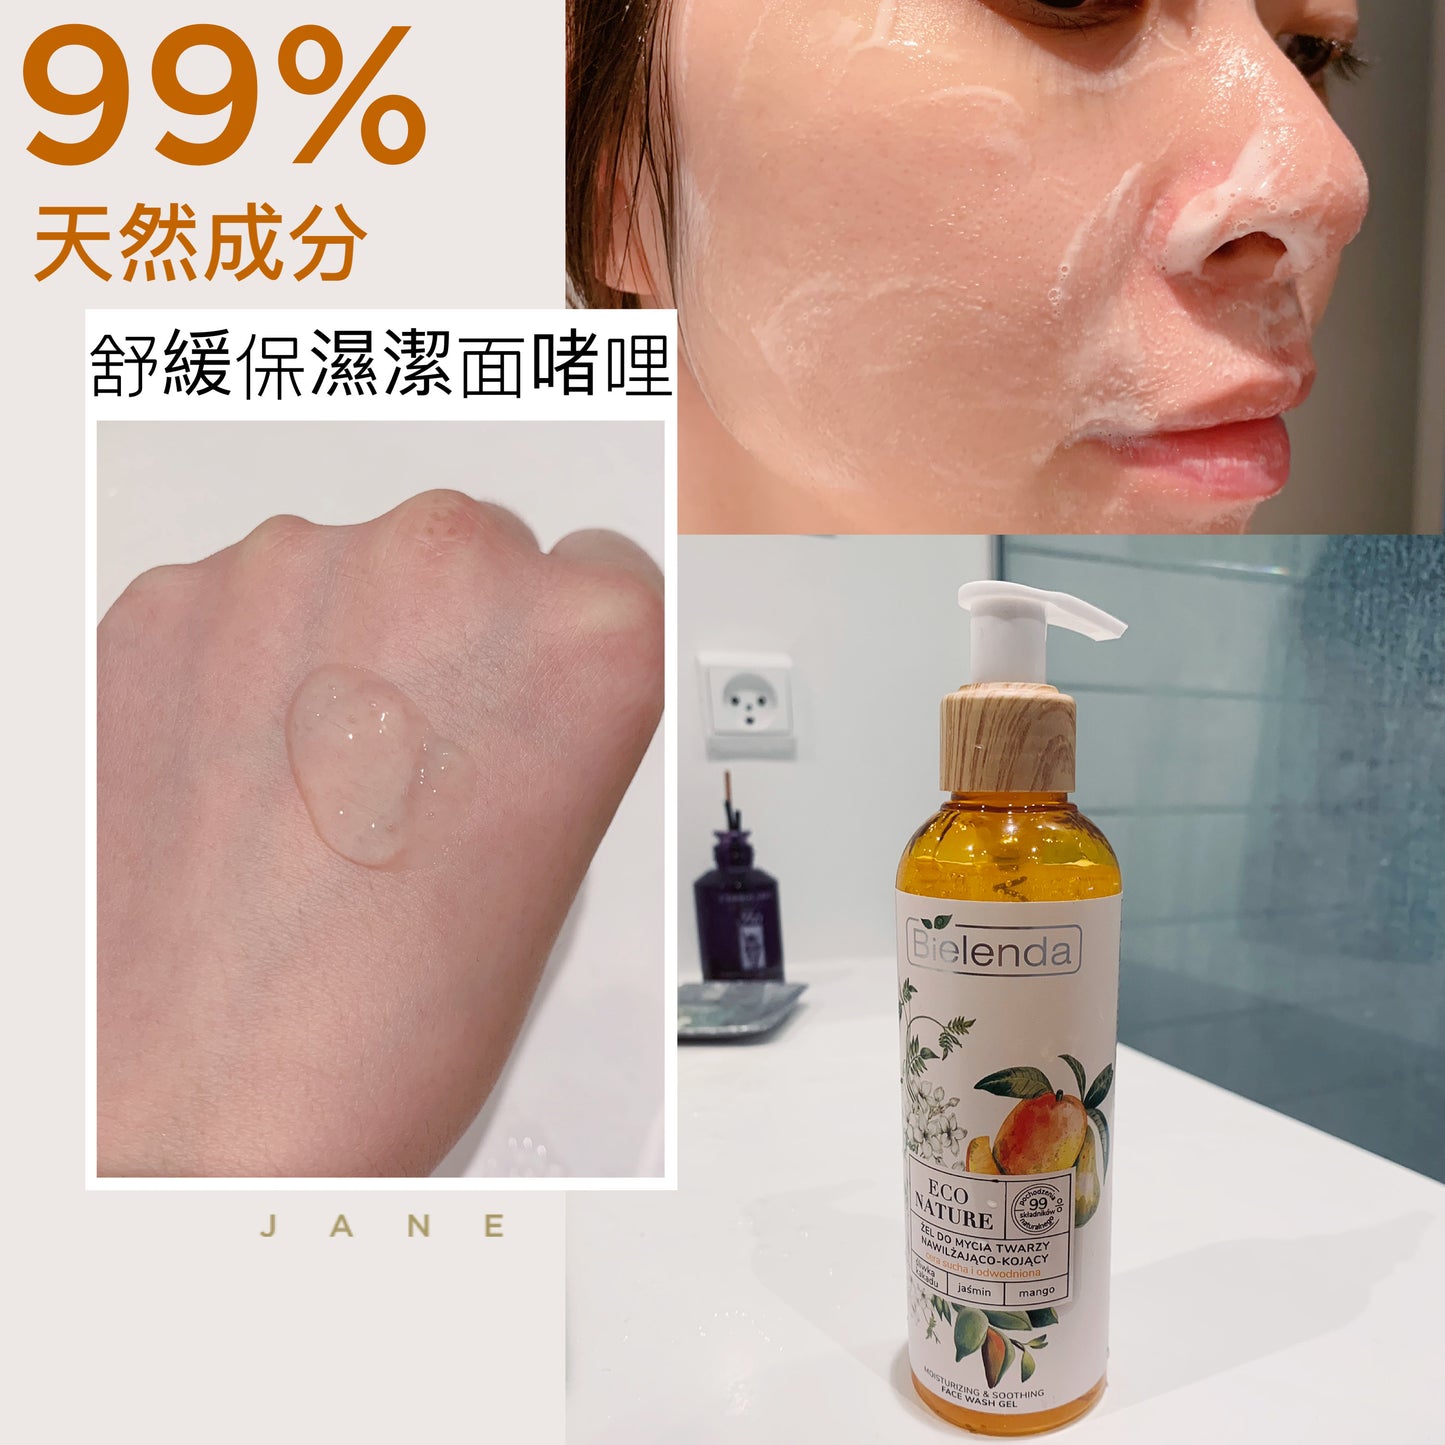 波蘭Bielenda ECO NATURE moisturizing and soothing face wash gel 天然舒緩保濕潔面啫哩 200ML